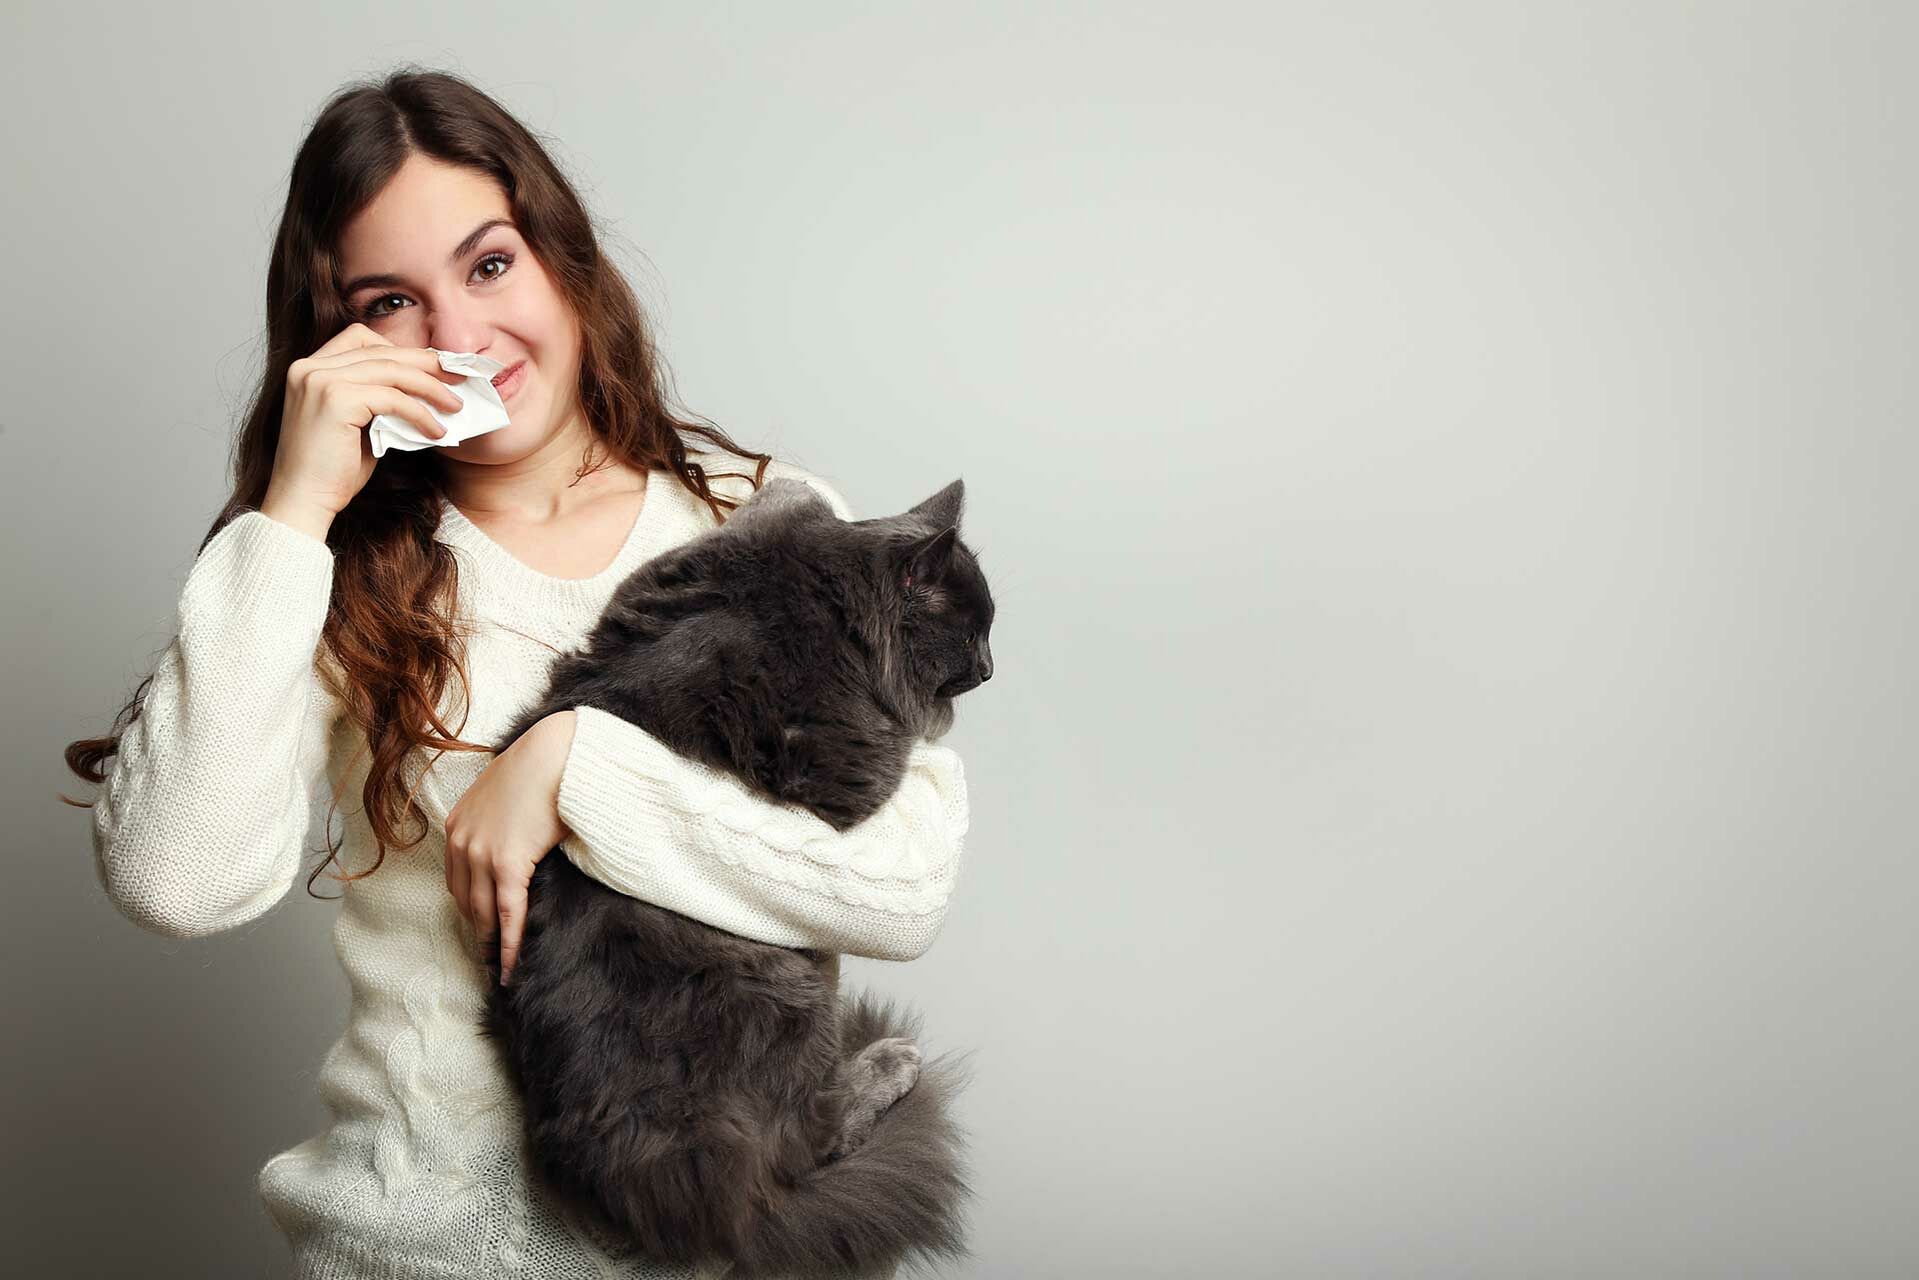 Können Katzen Krankheiten übertragen?